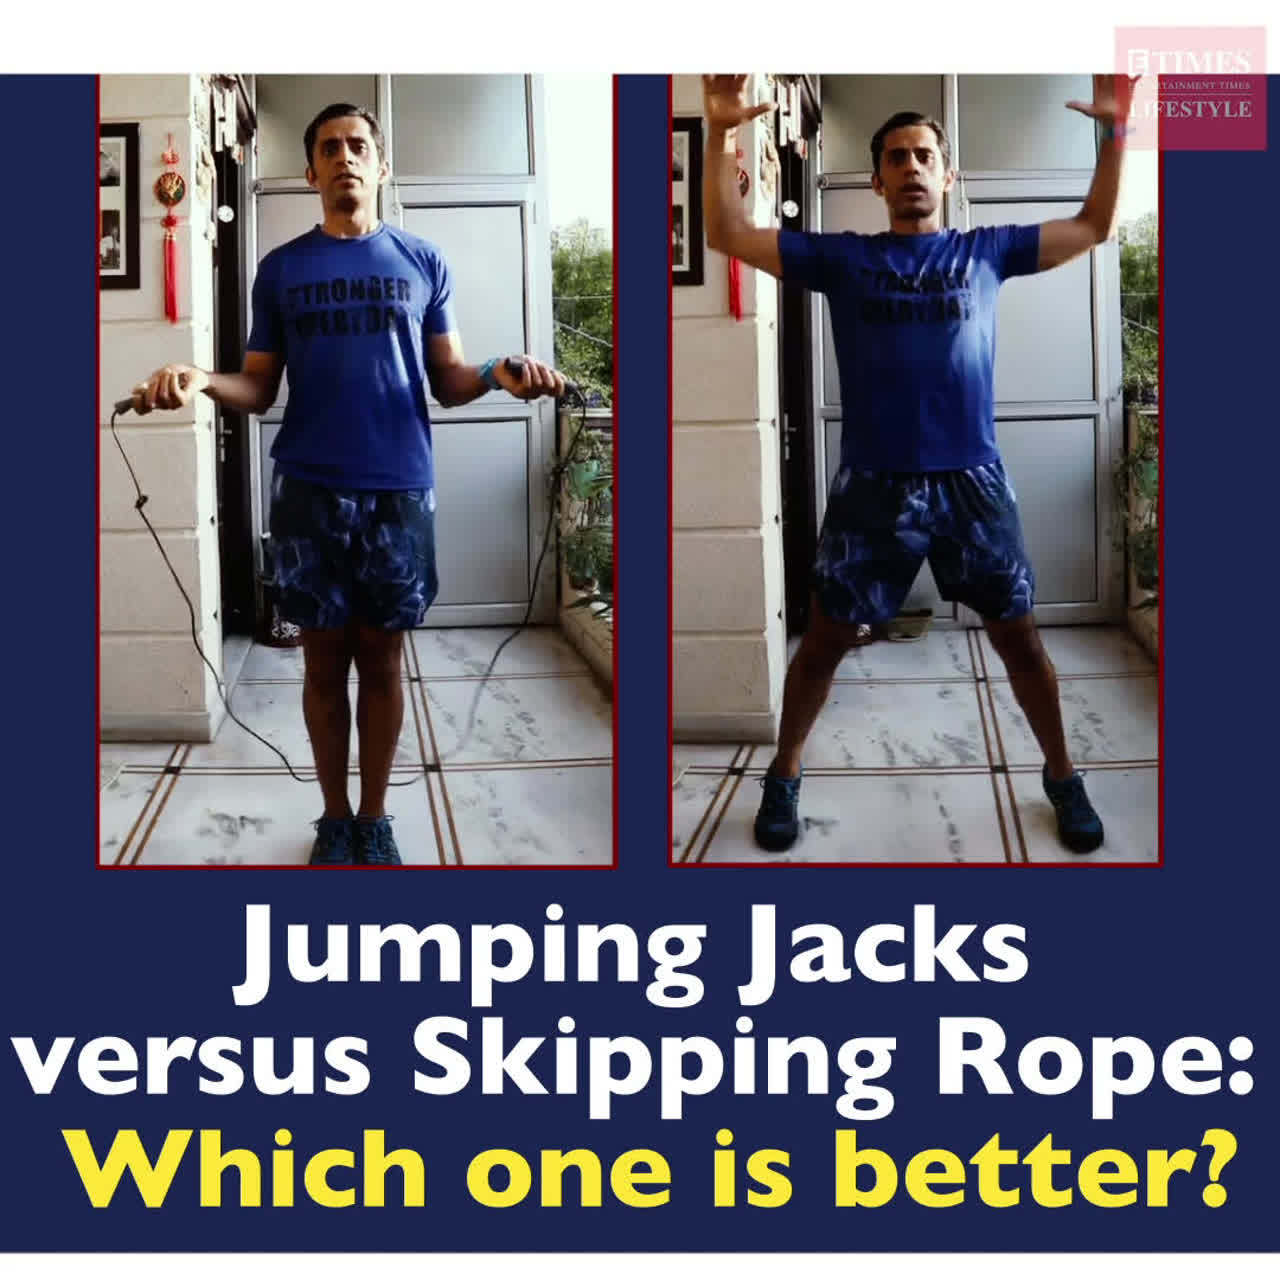 Exercise Spotlight: Jumping Jacks 